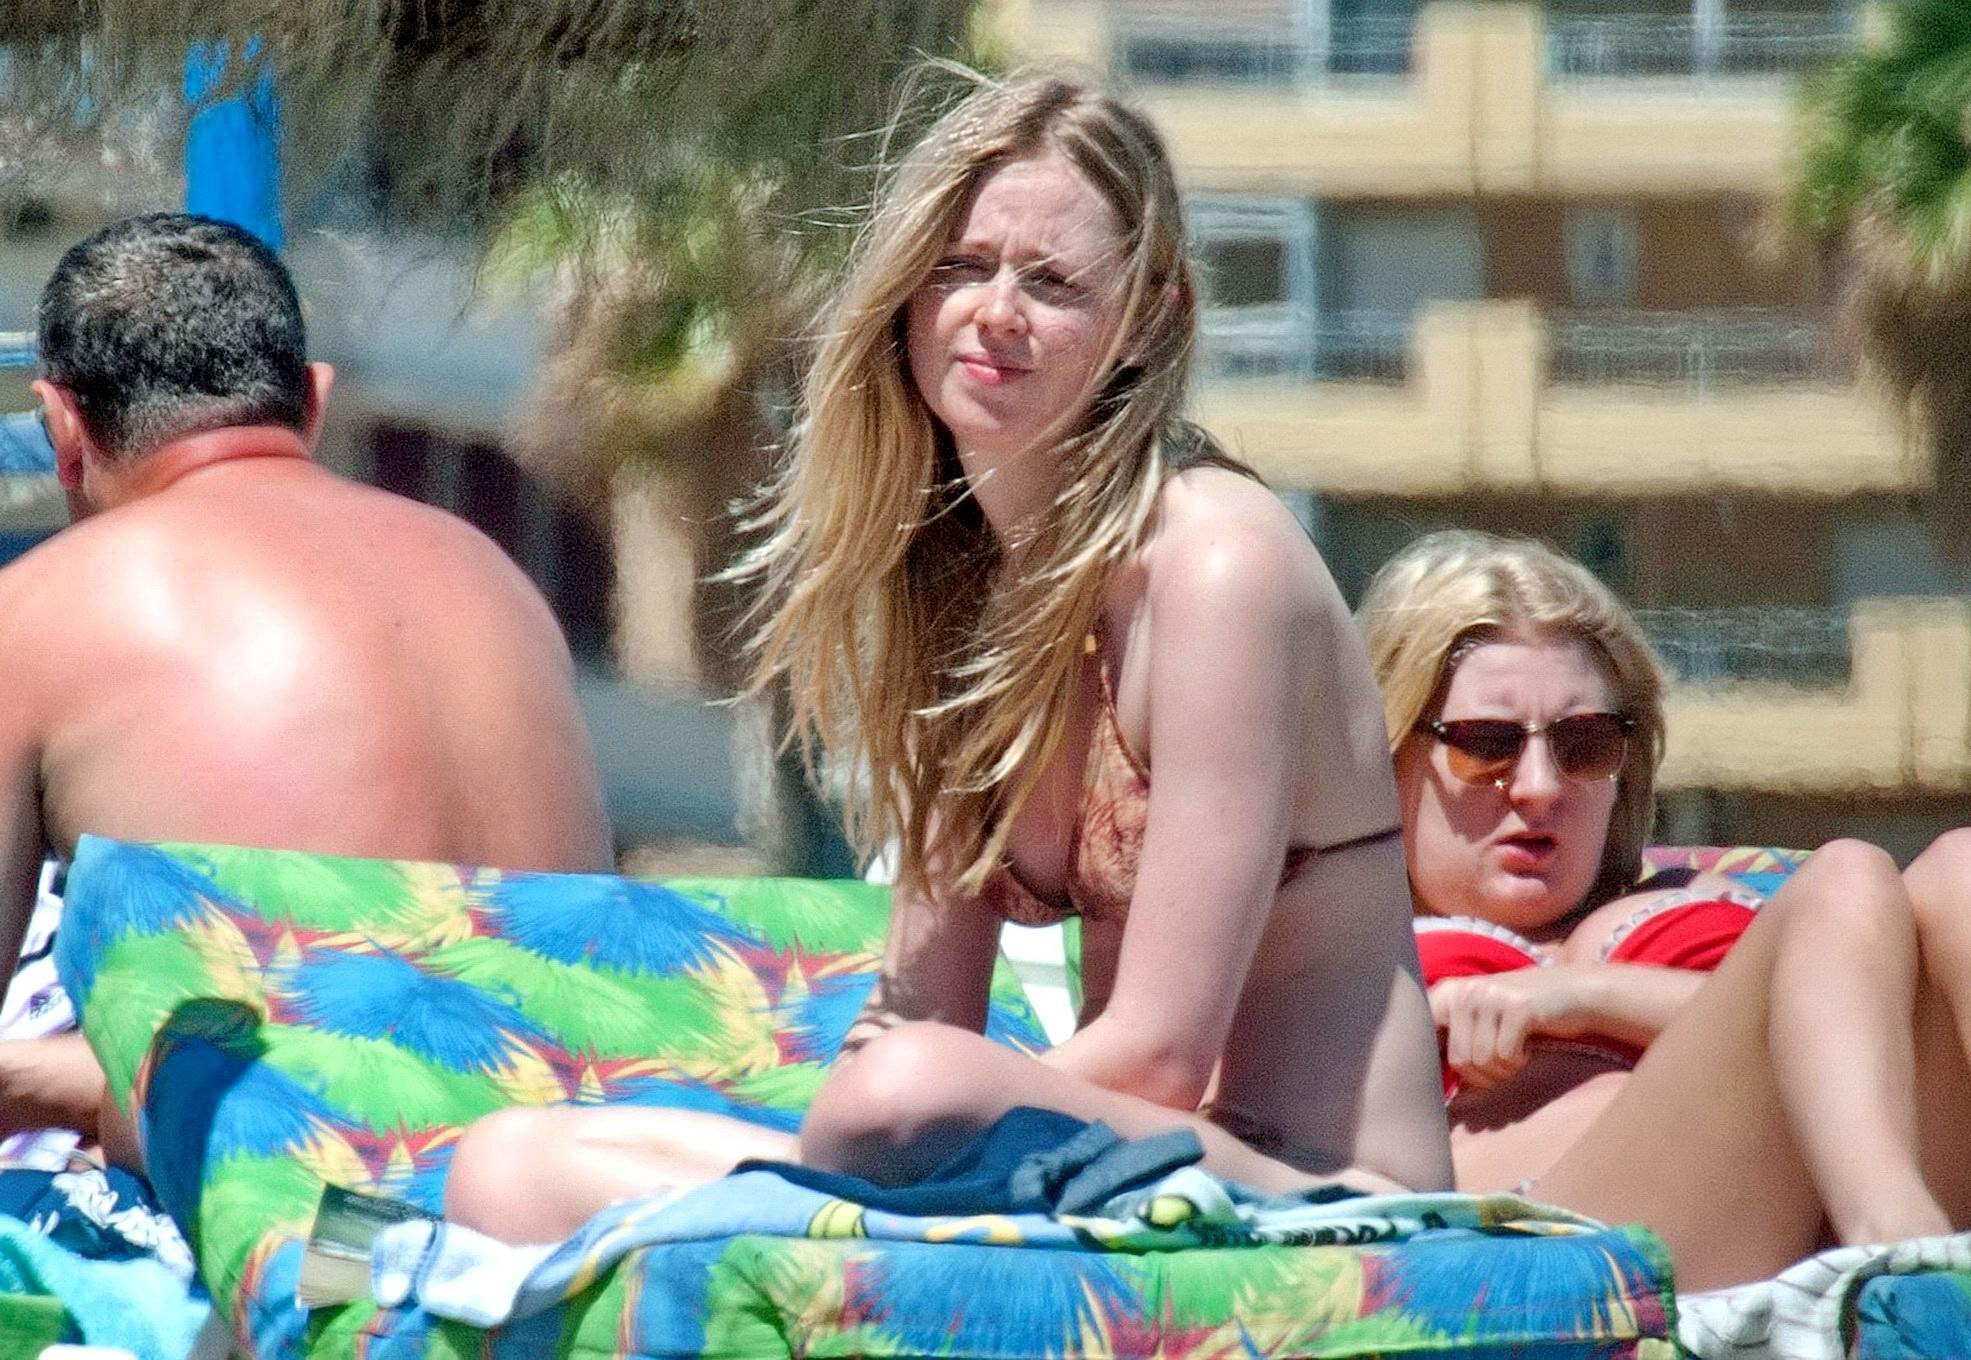 Diana vickers portant un bikini imprimé loup au bord d'une piscine en Espagne
 #75196751